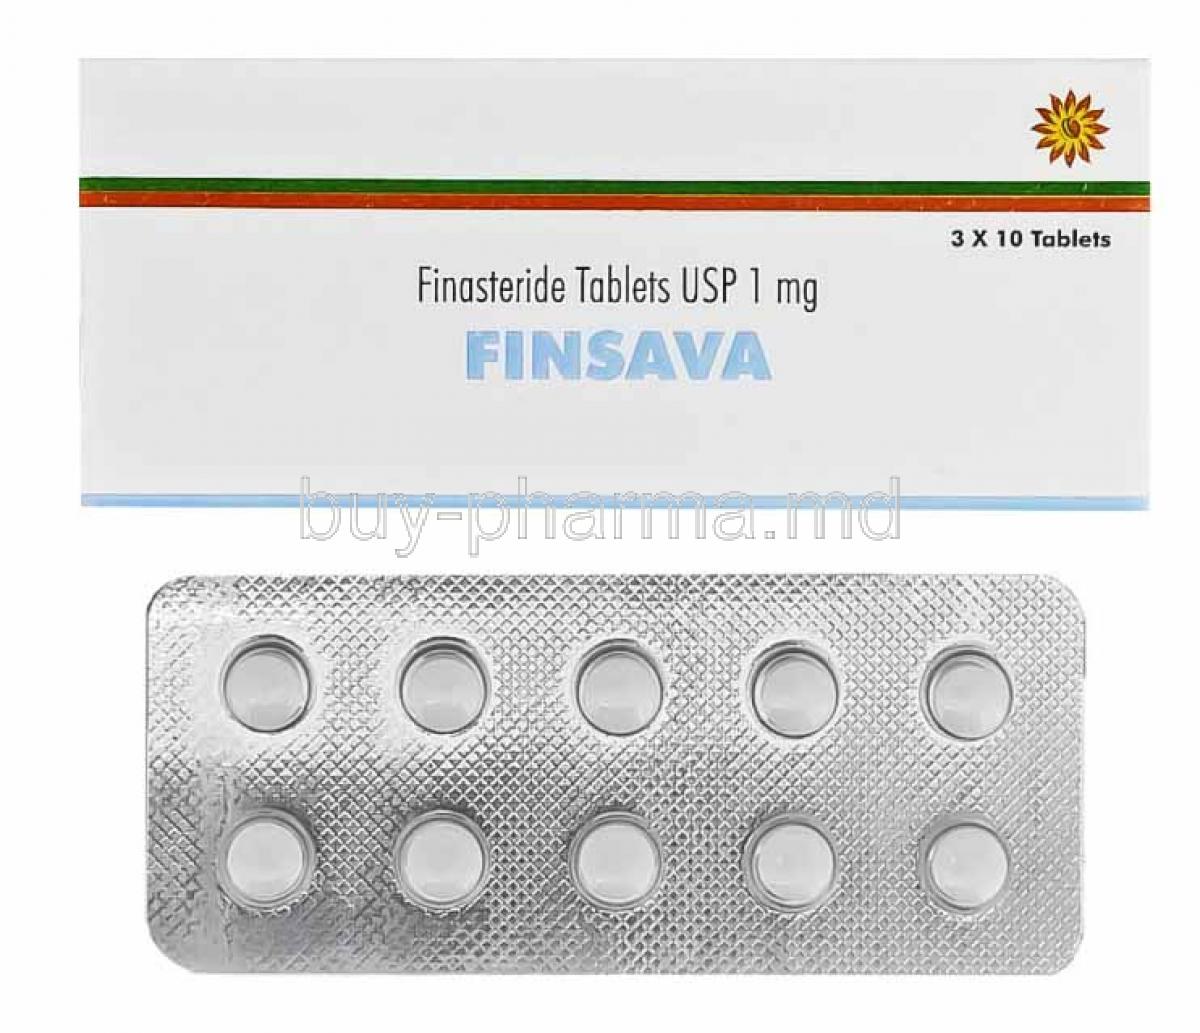 Finsava, Finasteride box and tablets